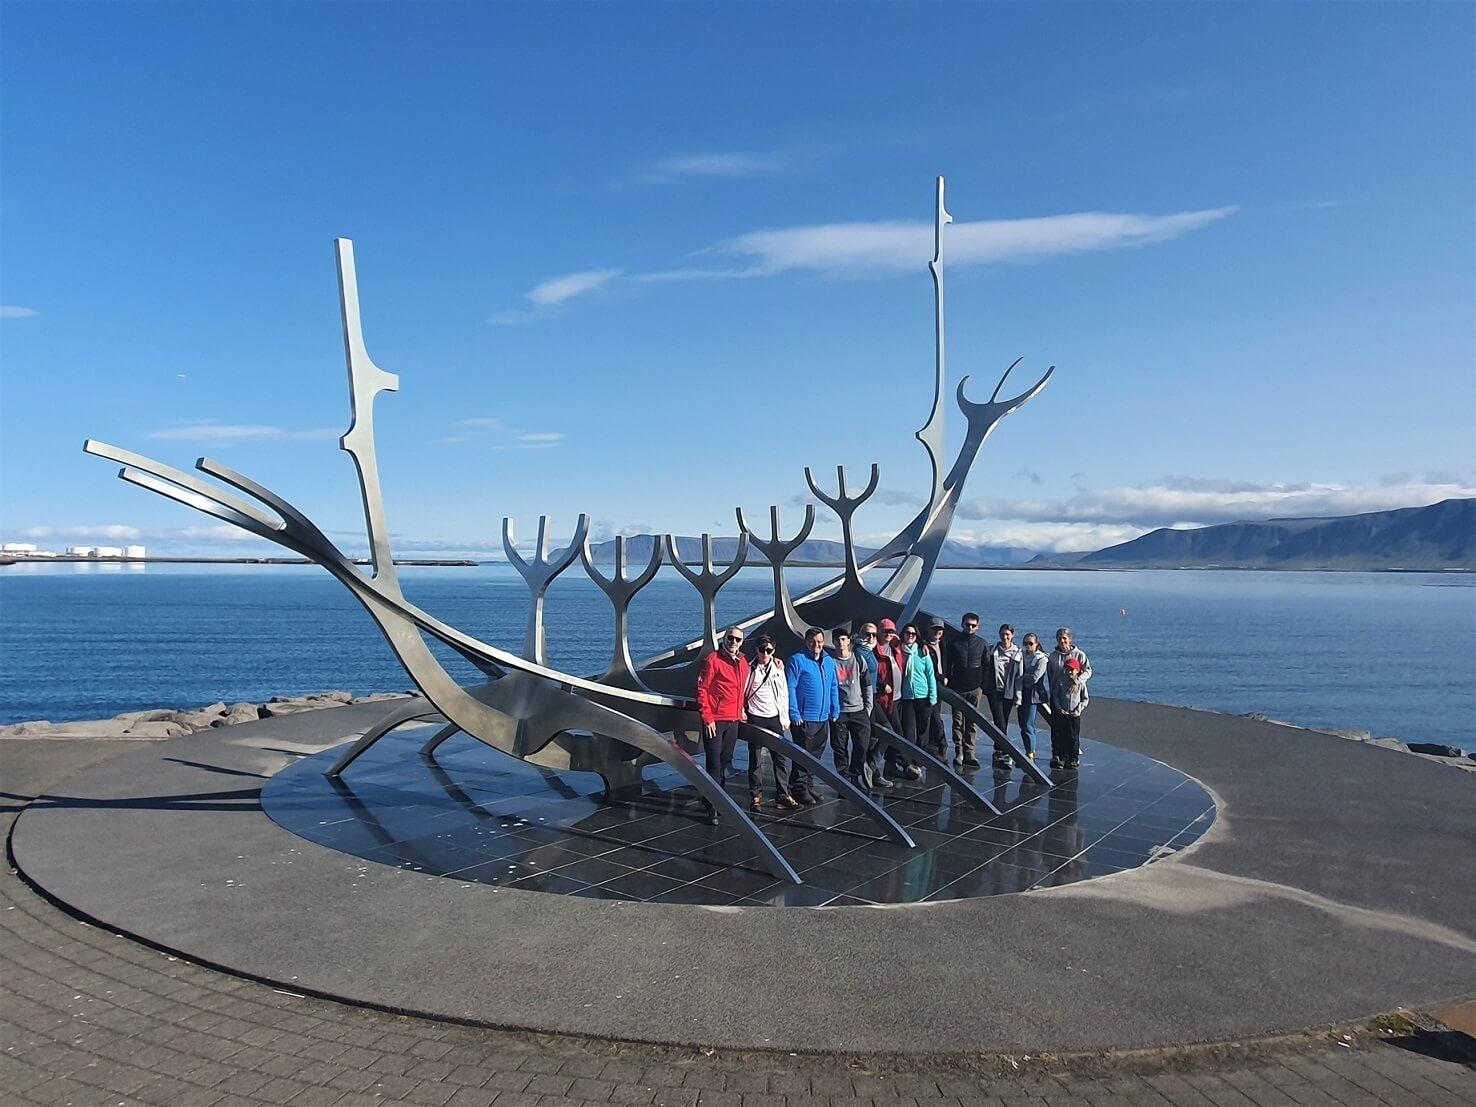 Visitando el Reykjavík con el grupo, barco Solfar